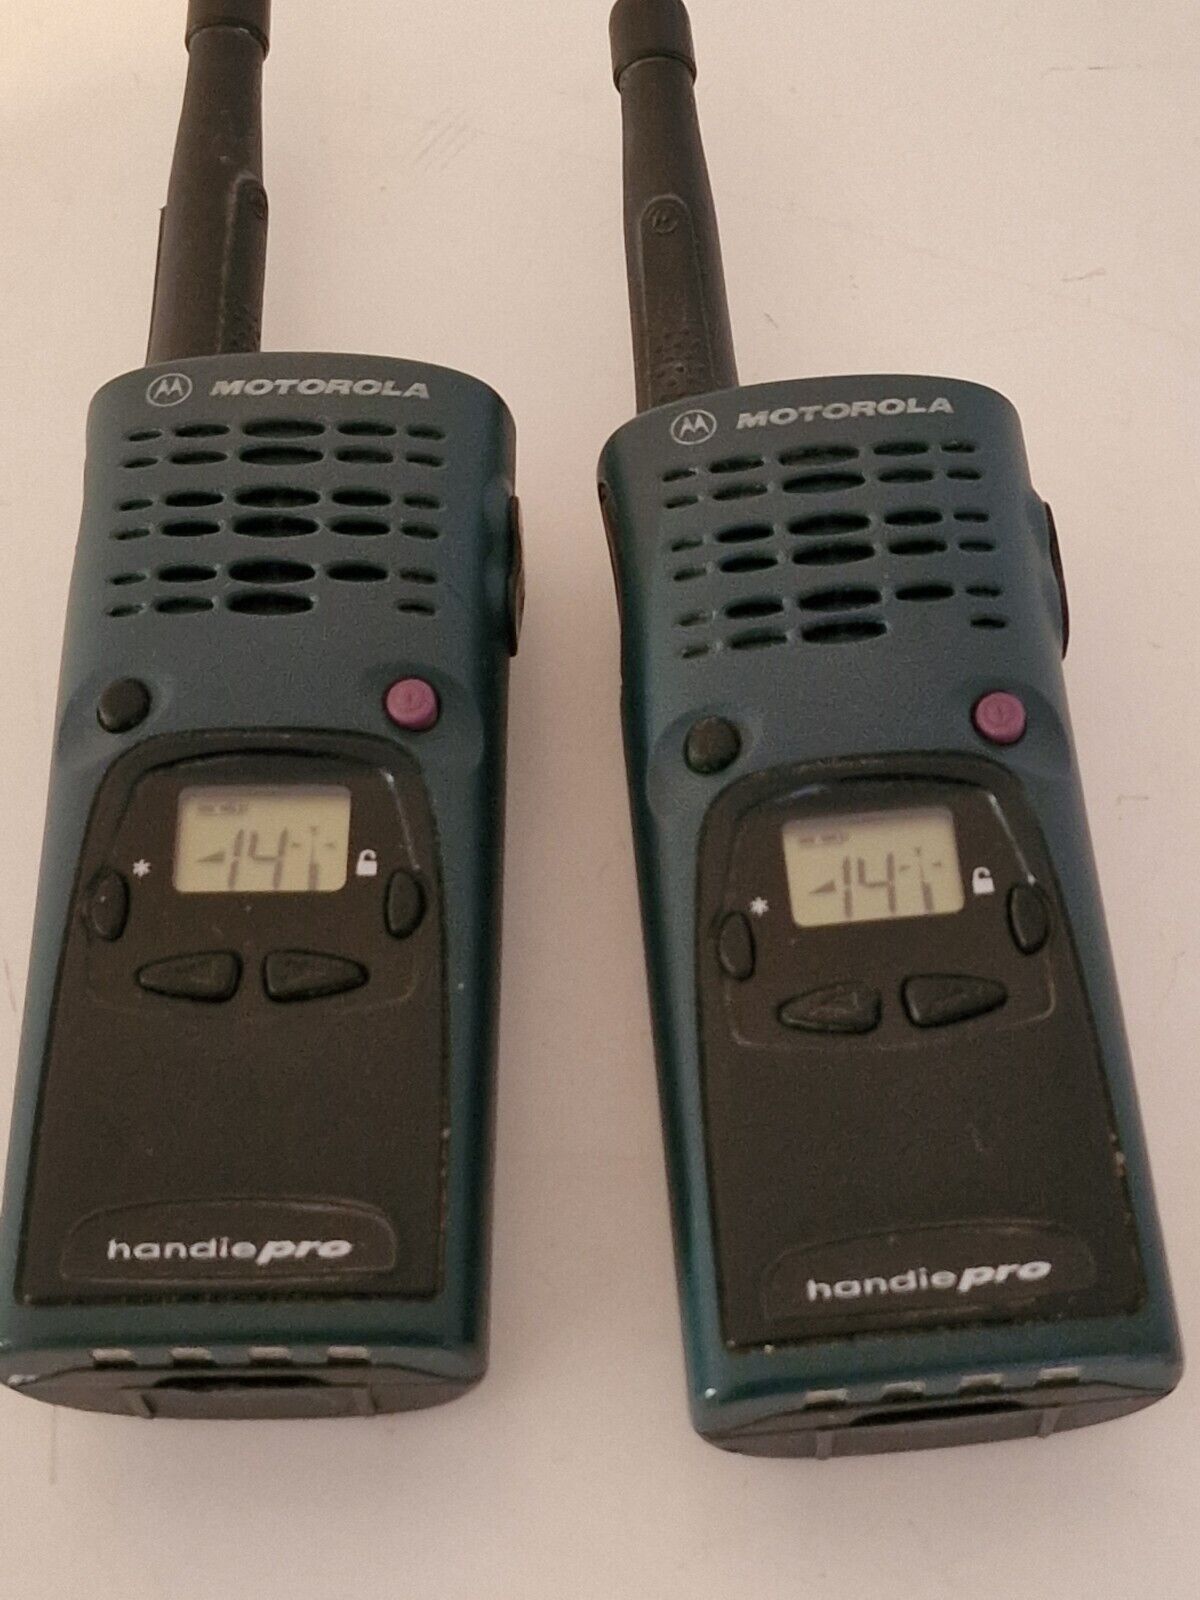 walkie talkies Motorola handie pro